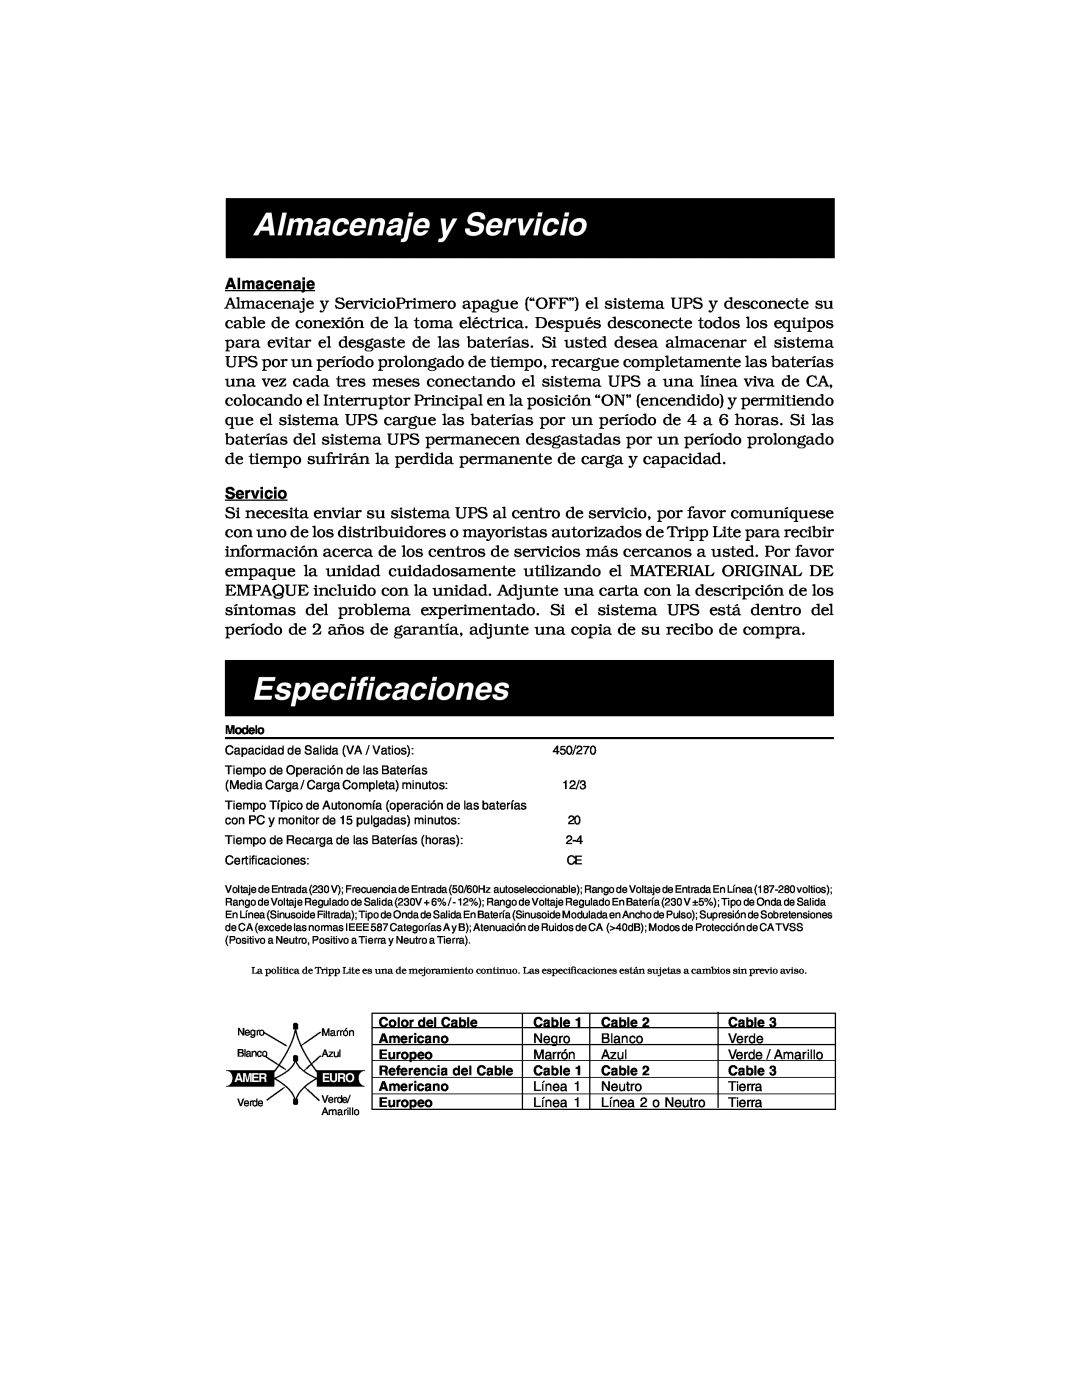 Tripp Lite 450 RTI specifications Almacenaje y Servicio, Especificaciones 